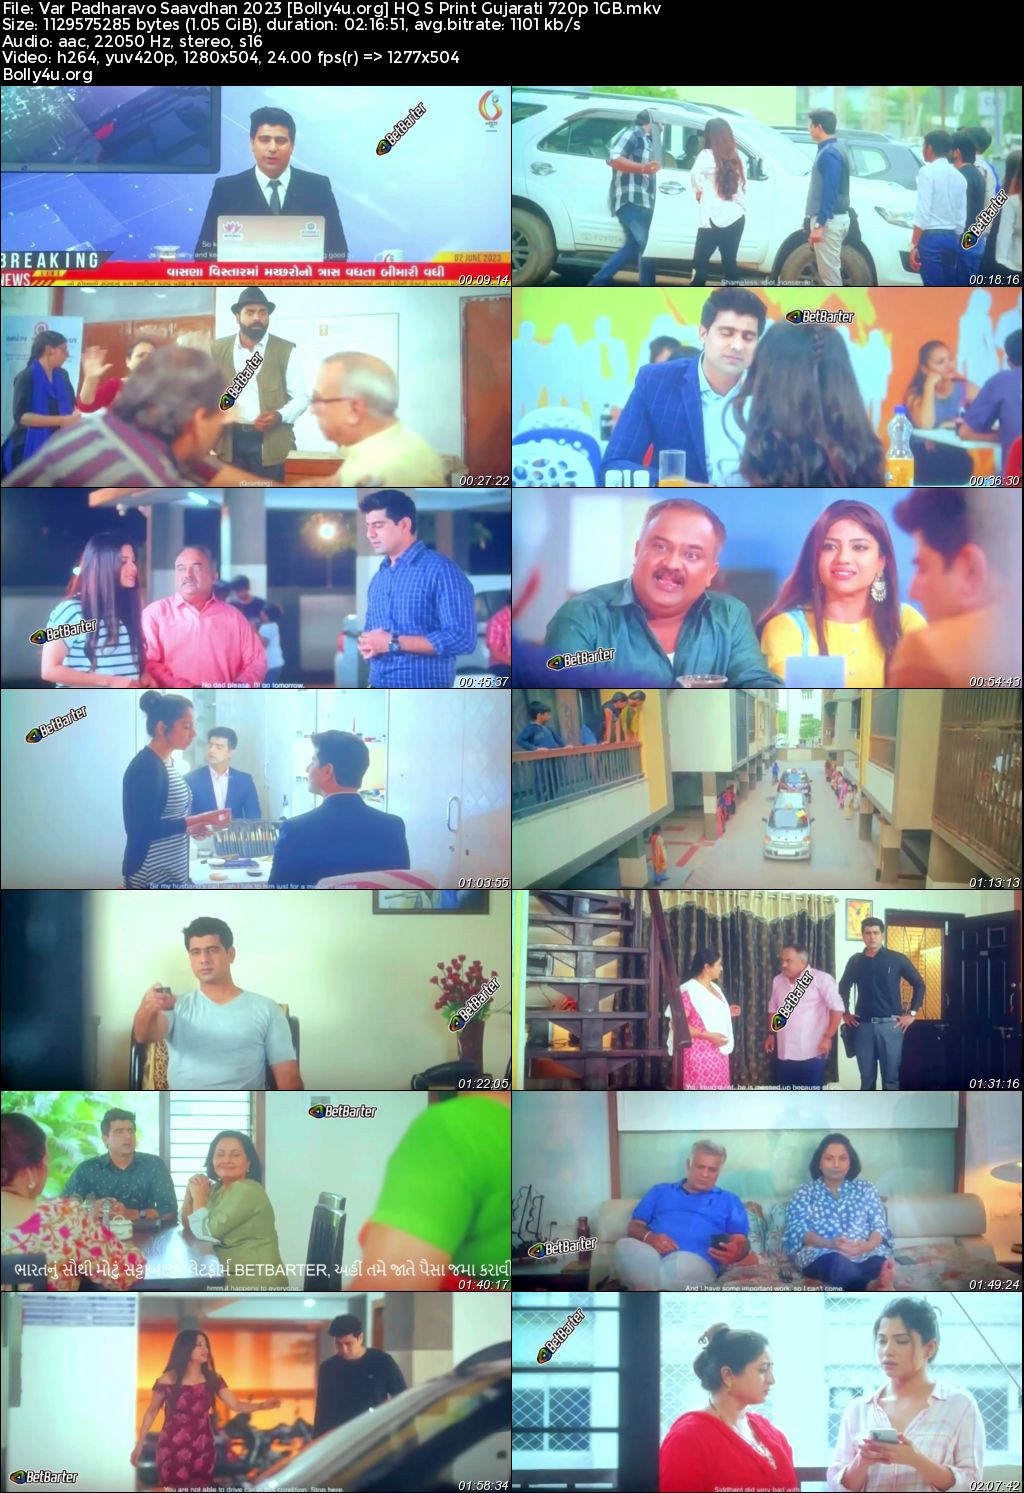 Var Padharavo Saavdhan 2023 HQ S Print Gujarati Full Movie Download 1080p 720p 480p